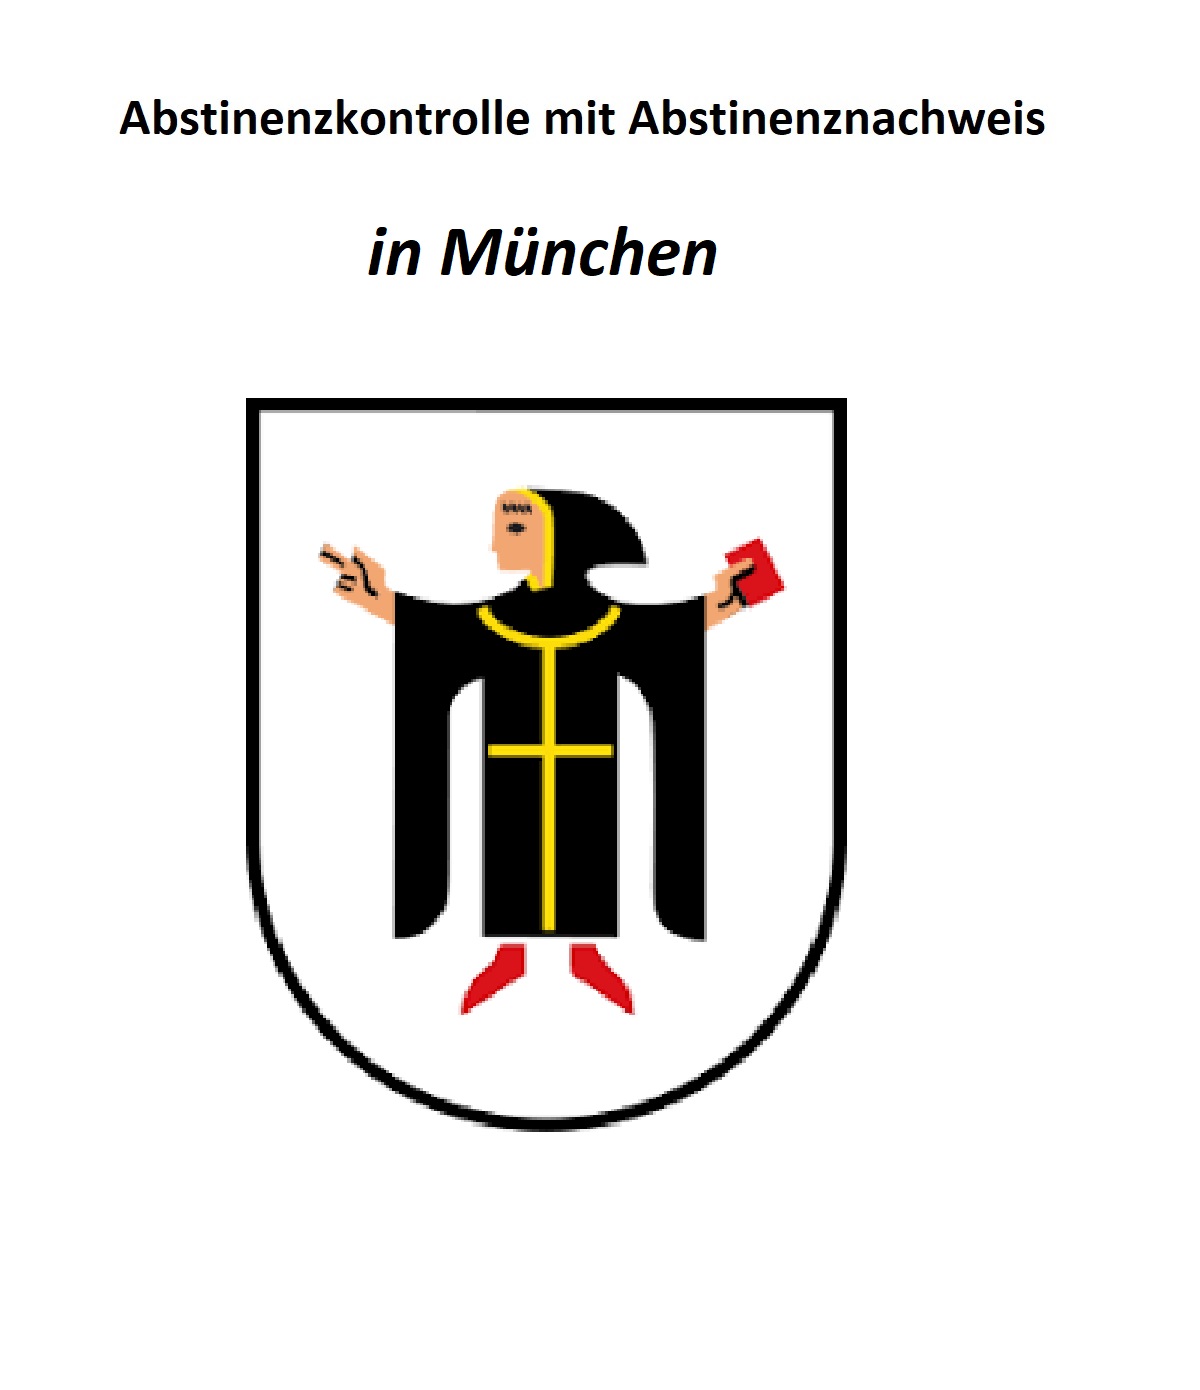 Standort Landkreis München für Abstinenzkontrolle und Abstinenznachweis